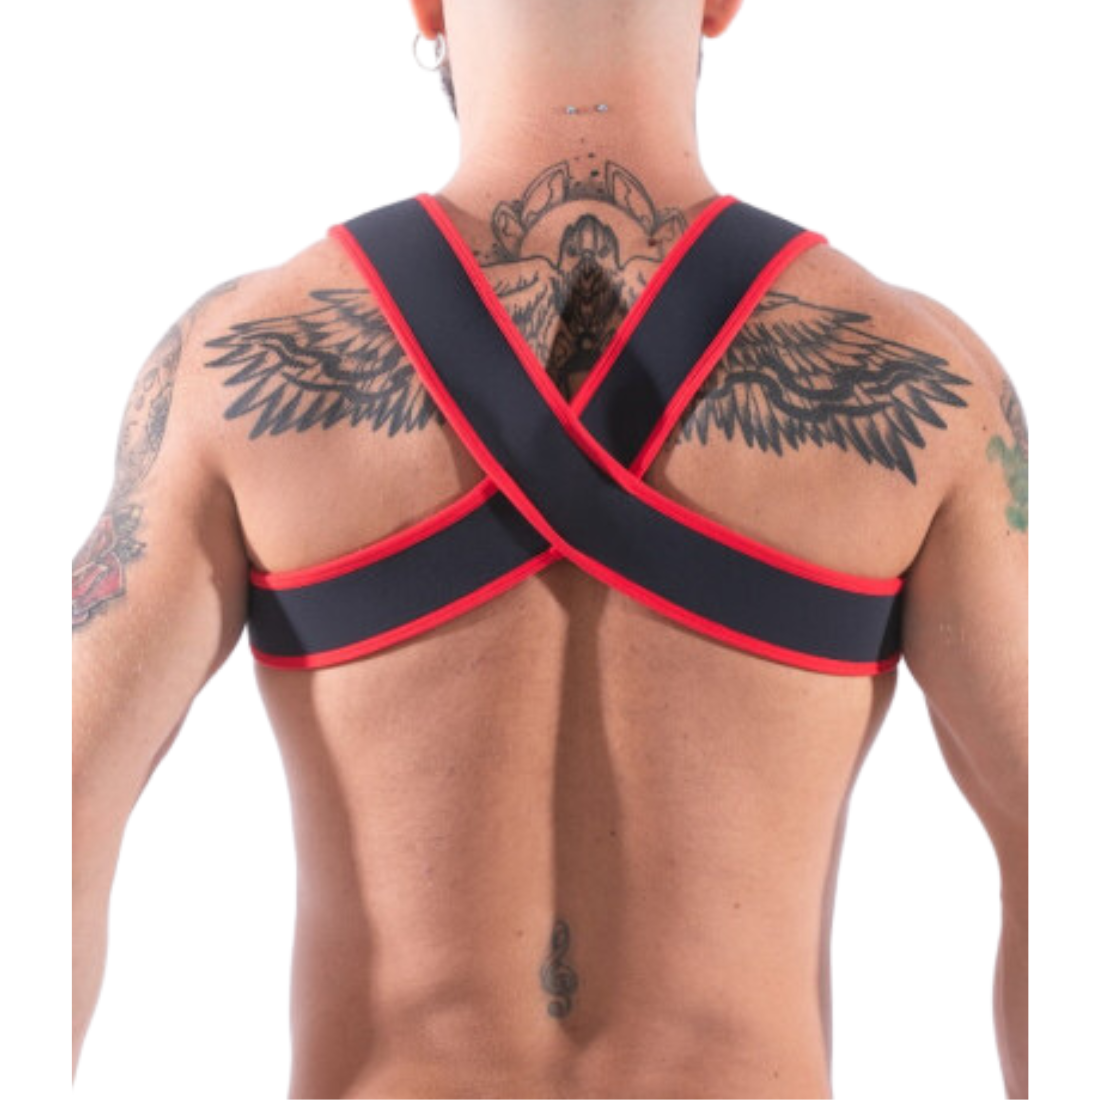 zwarte gay party harnas met rode biezen, ontworpen door het Italiaanse modehuis Sparta’s Harness en te koop bij Flavourez.